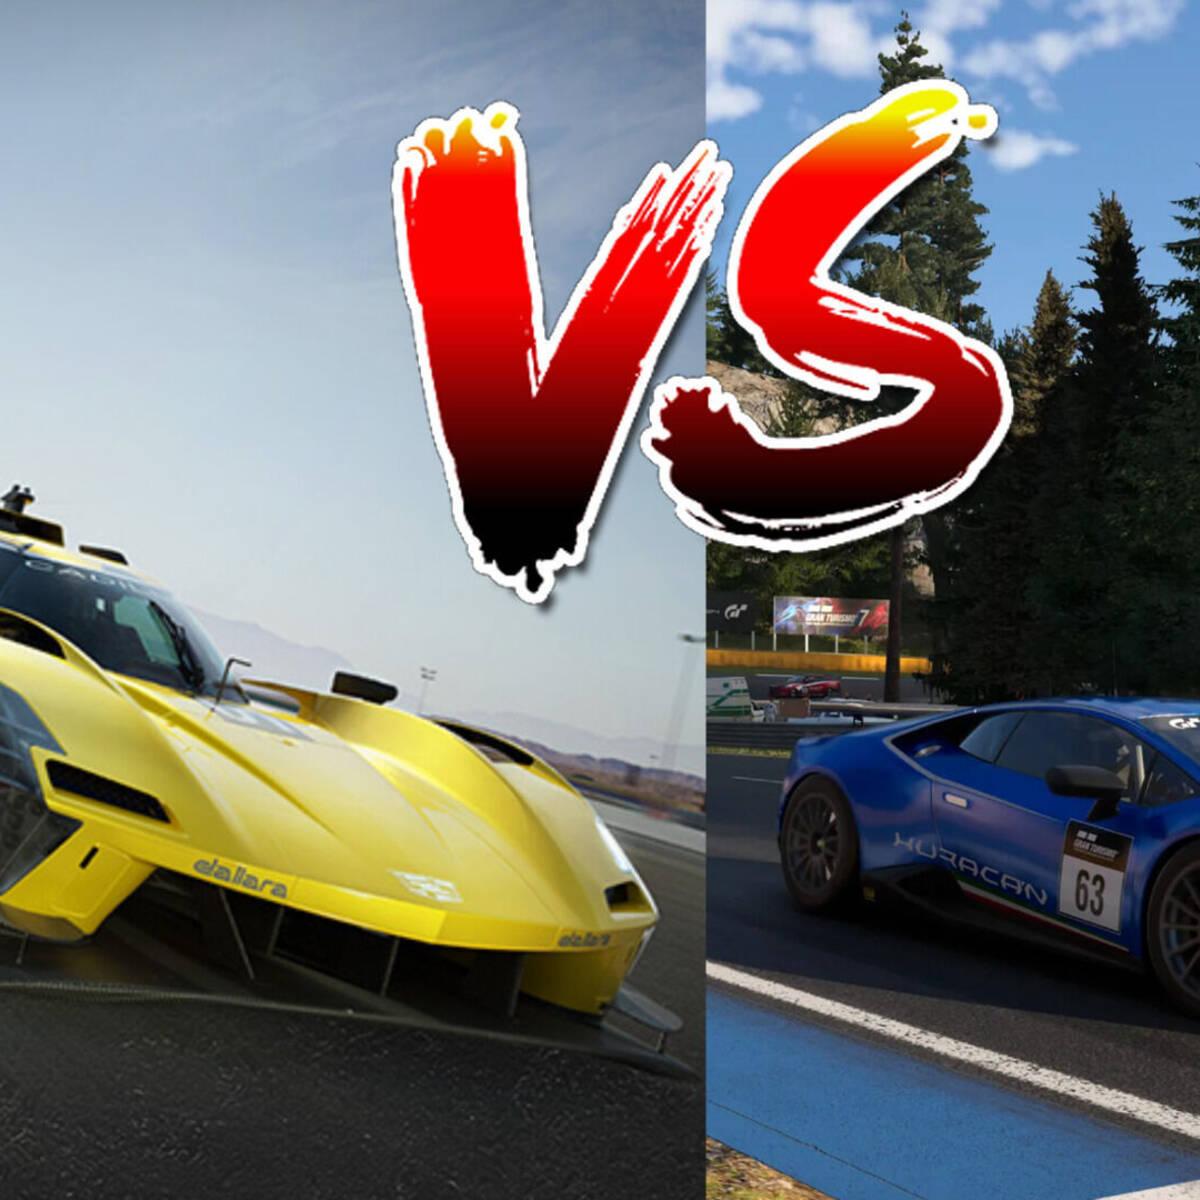 Comparativa gráfica Forza Motorsport vs Gran Turismo 7: ¿Qué juego